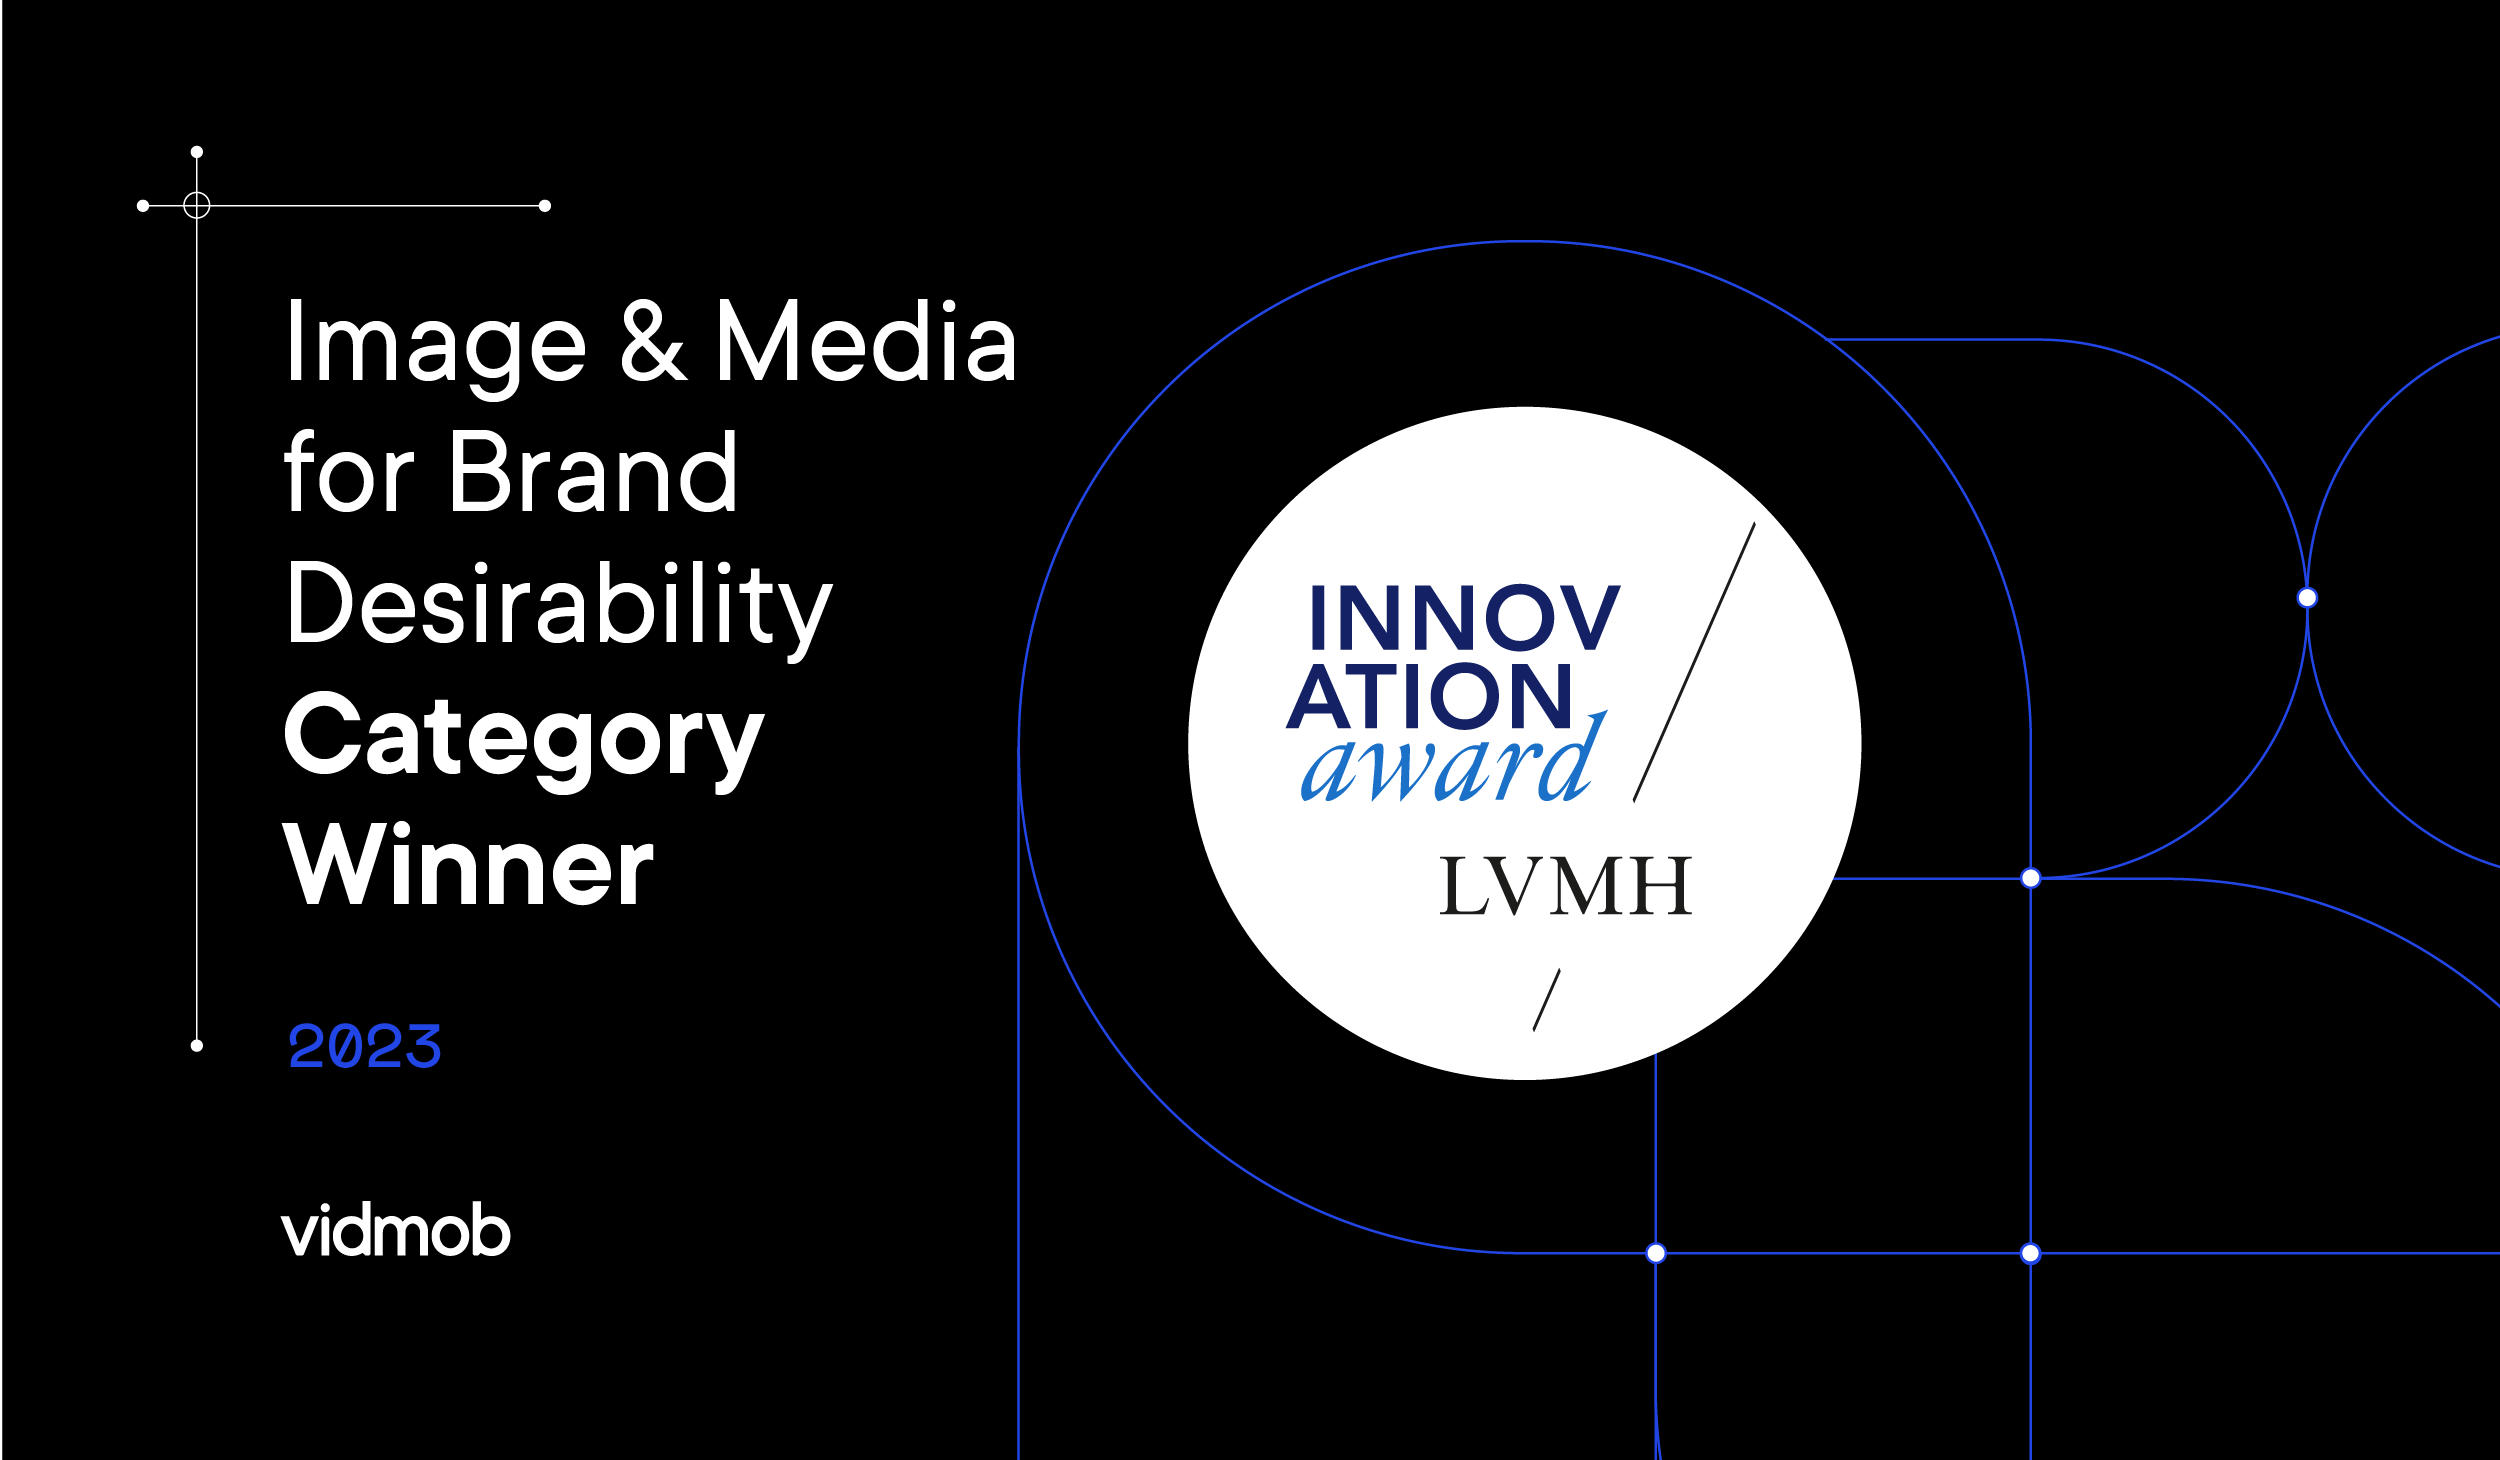 LVMH and innovation - LVMH